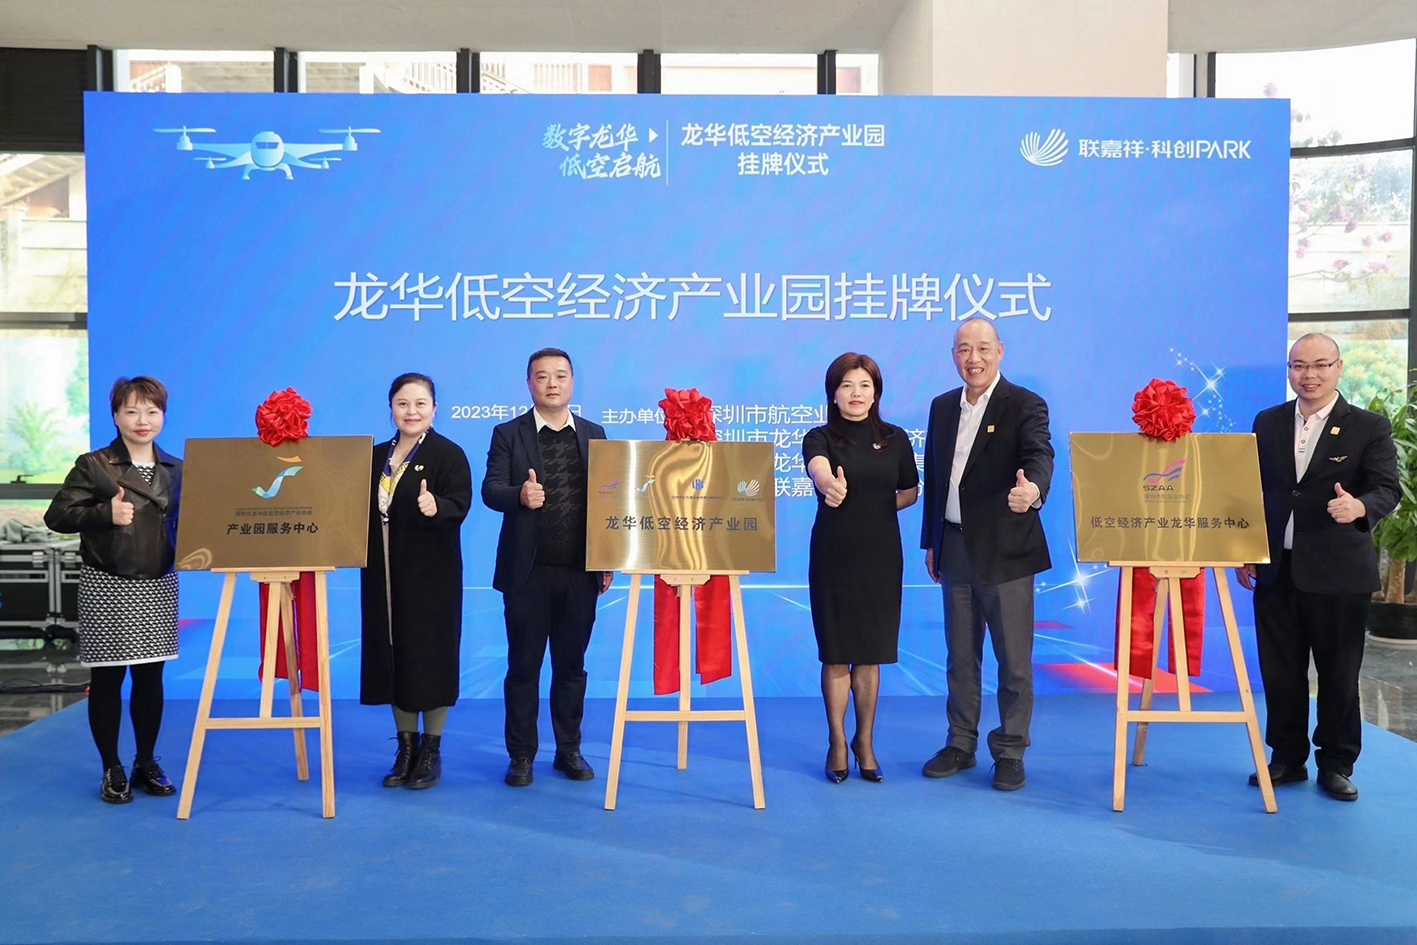 龙华区首个低空经济产业园正式揭牌